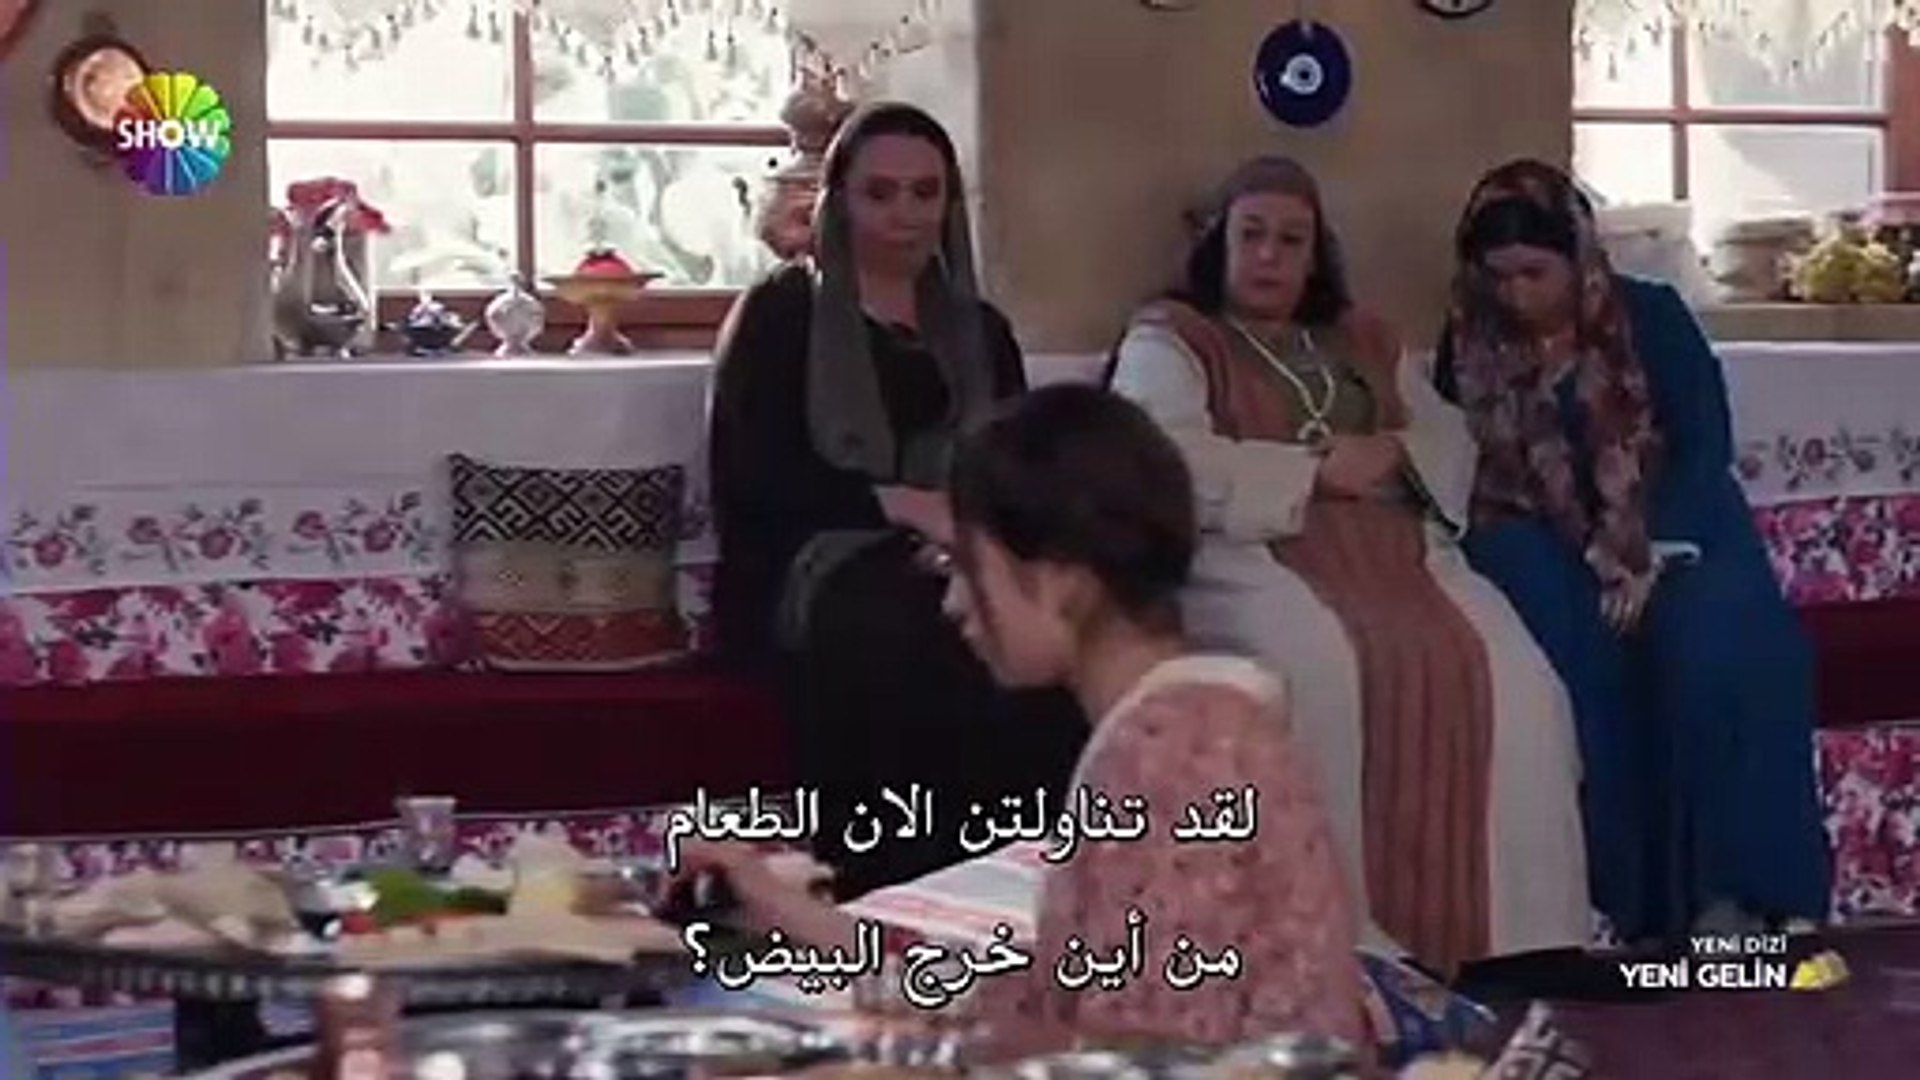 مسلسل العروس الجديدة الحلقة 1 القسم 2 مترجم للعربية فيديو Dailymotion